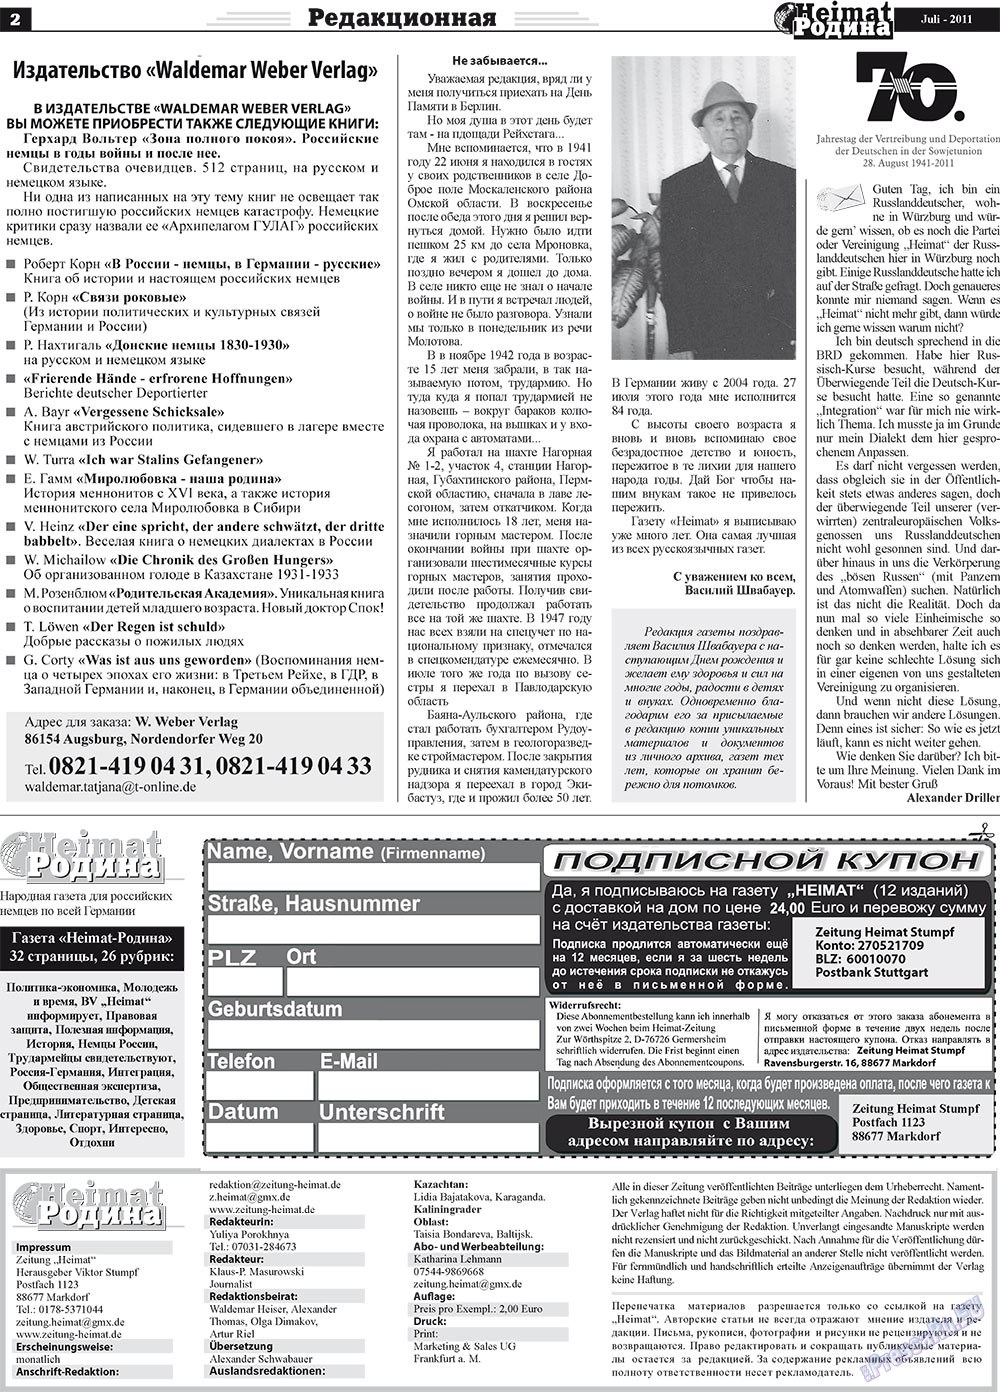 Heimat-Родина (газета). 2011 год, номер 7, стр. 2